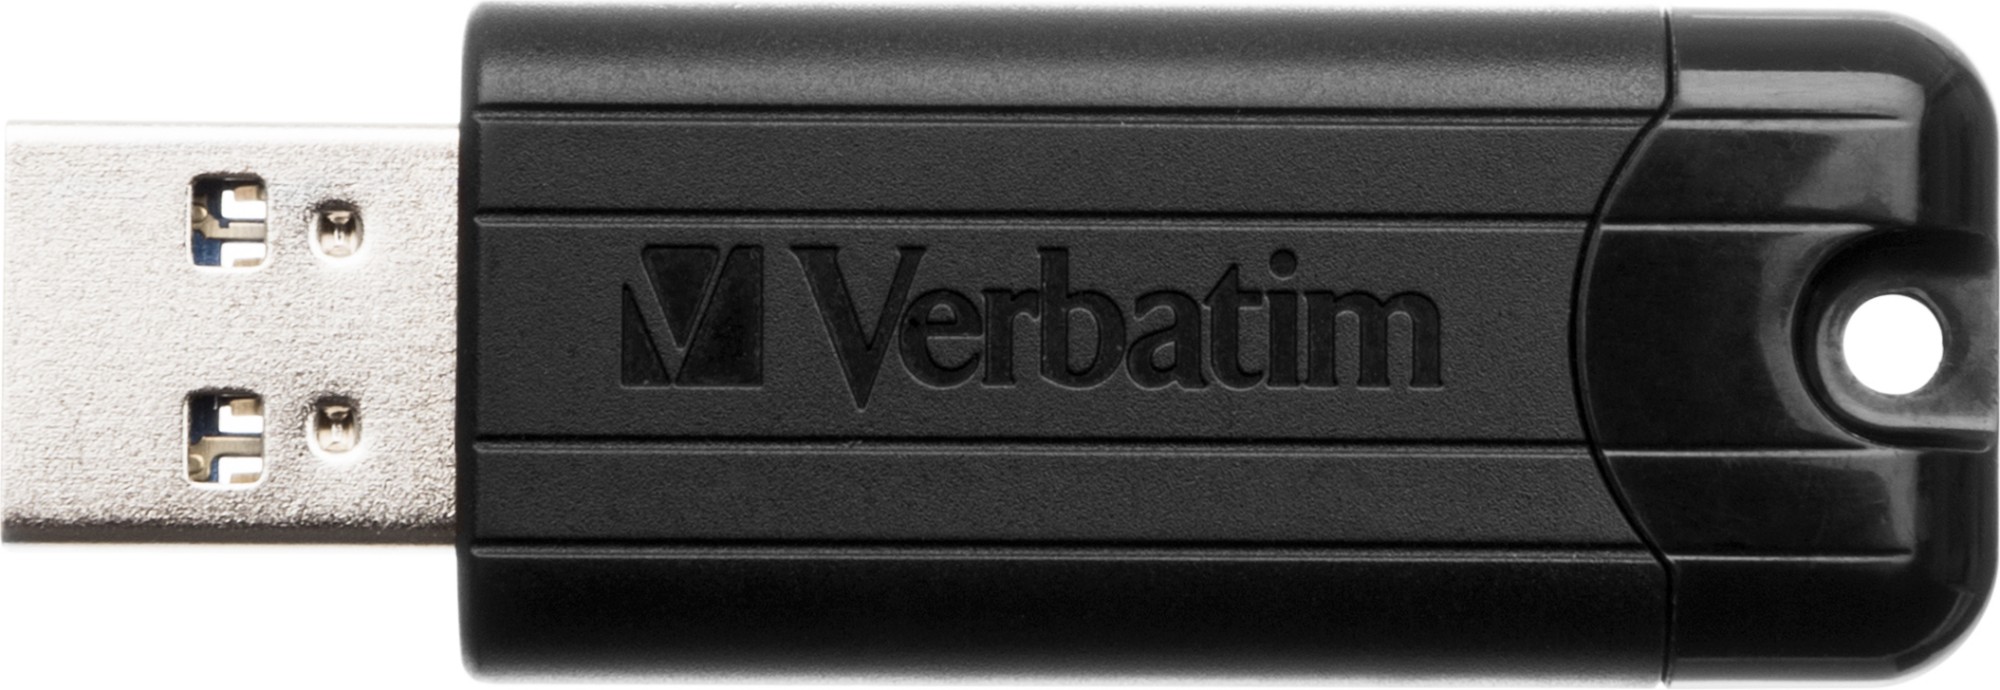 Verbatim PinStripe 3.0 - USB 3.0 Drive 32 GB – - Black